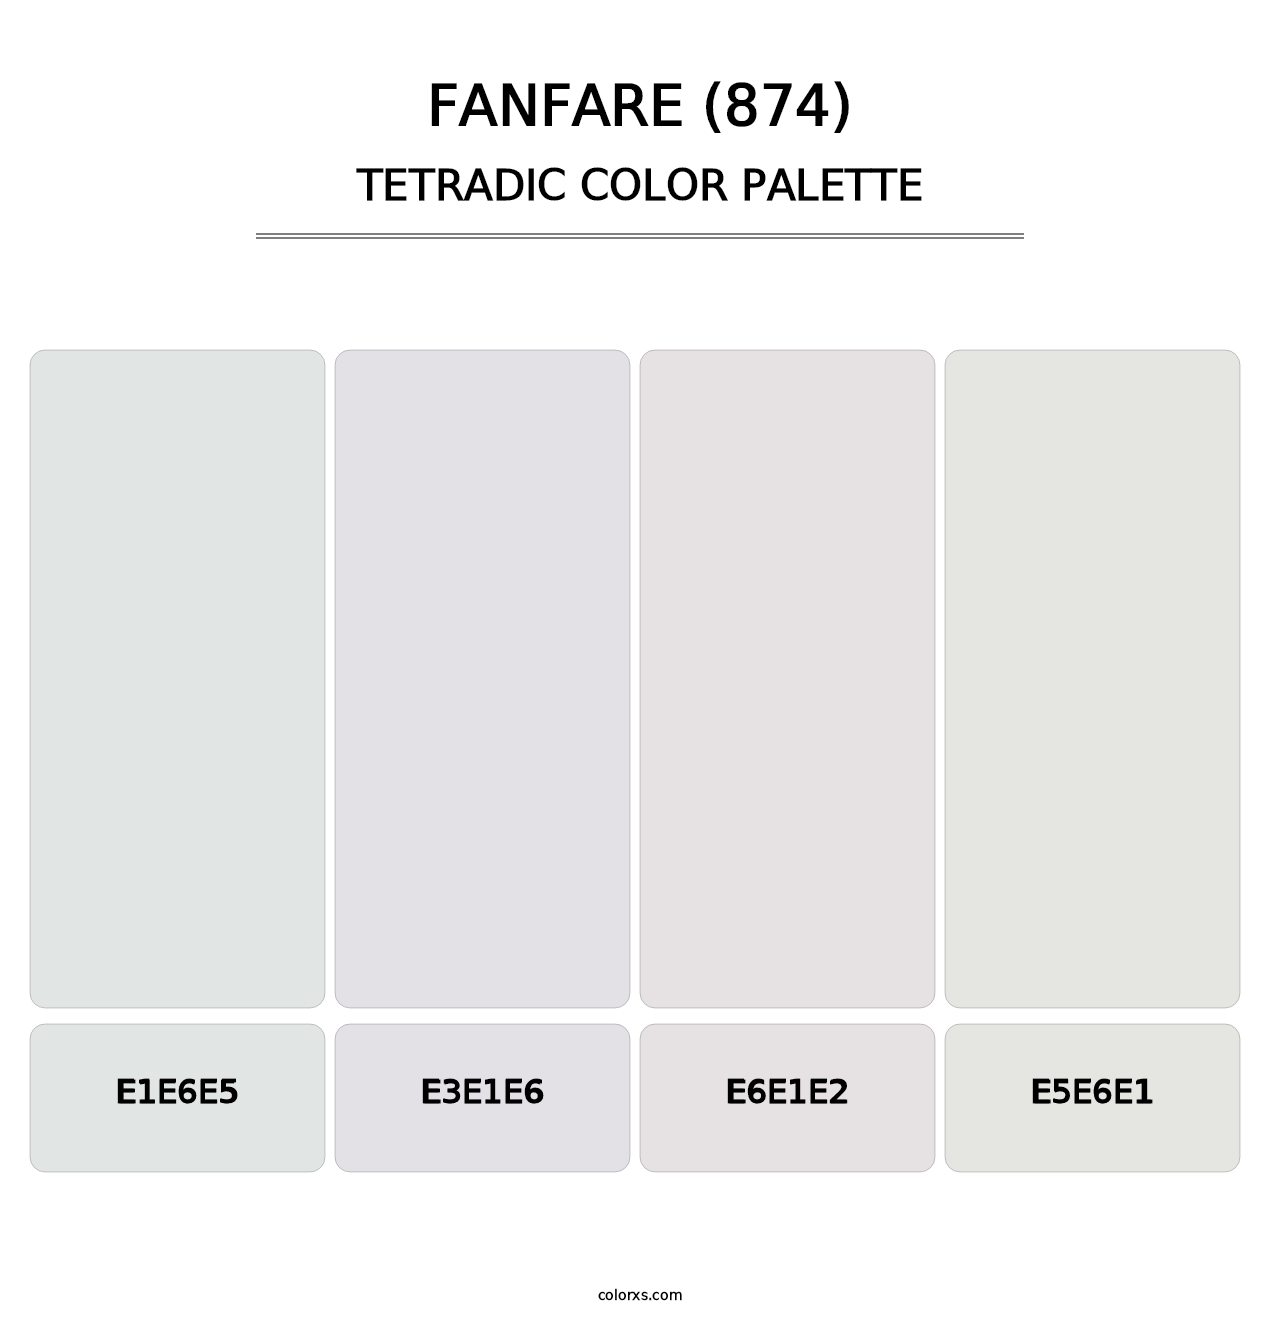 Fanfare (874) - Tetradic Color Palette